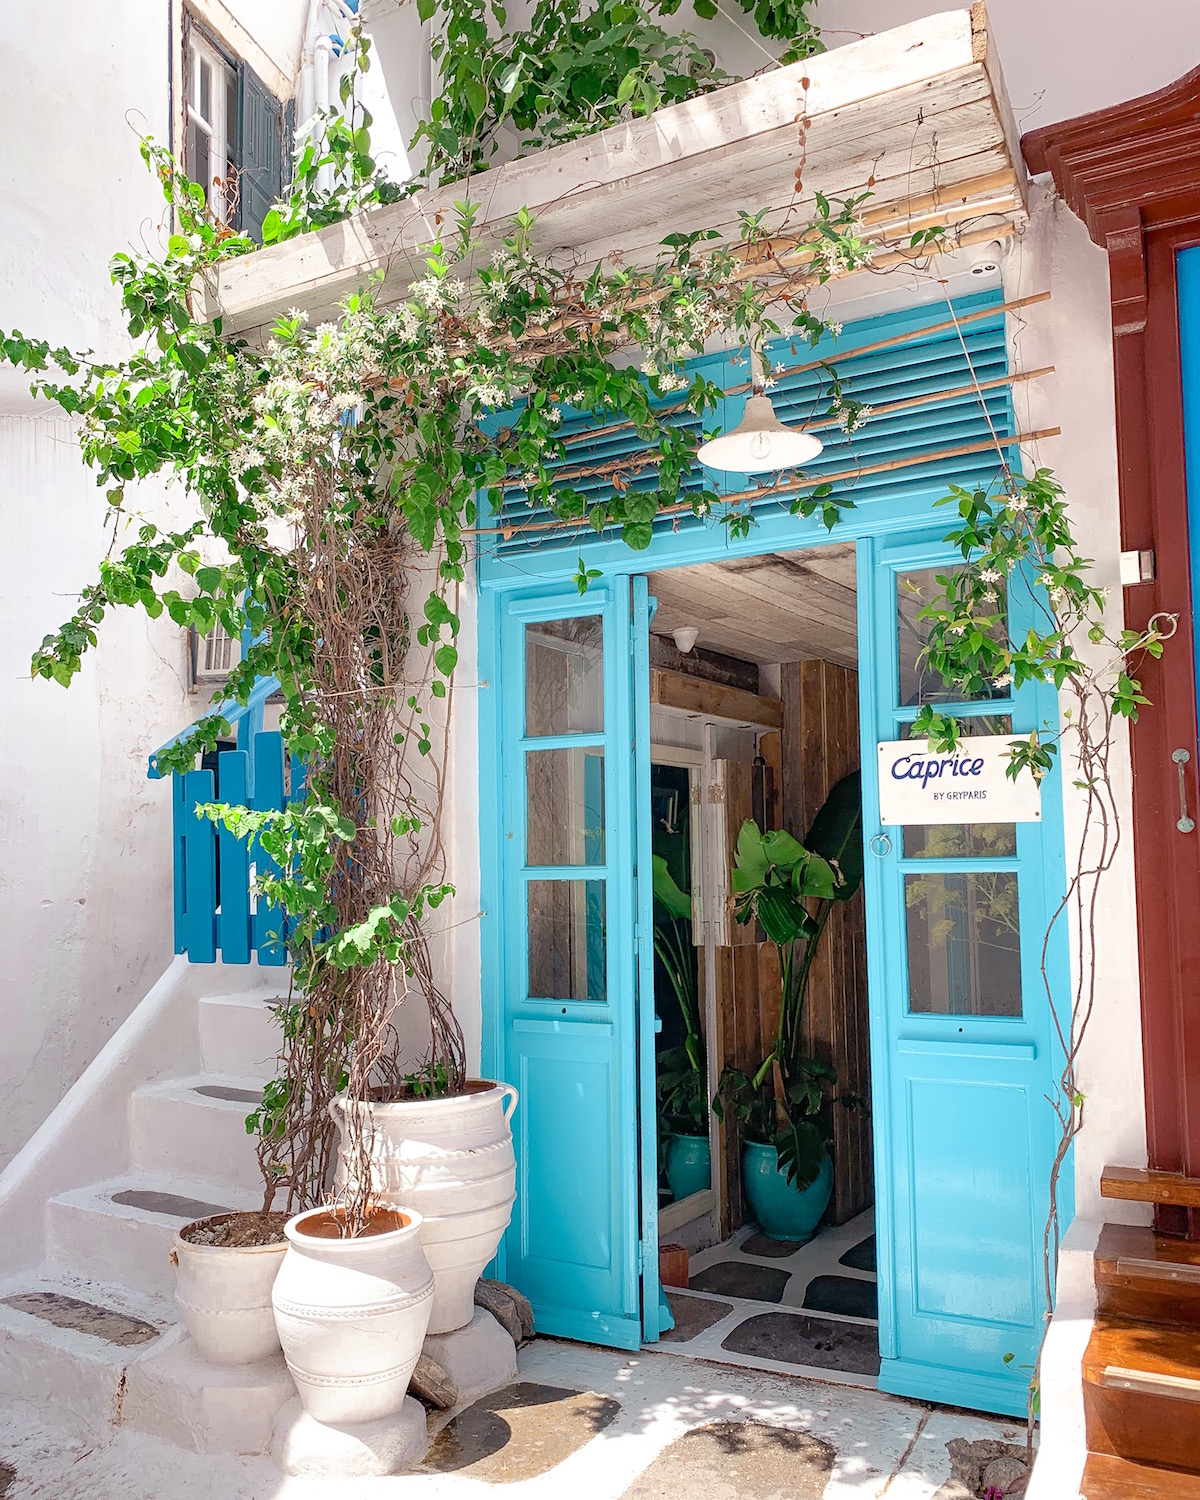 Mykonos Greece Travel Guide